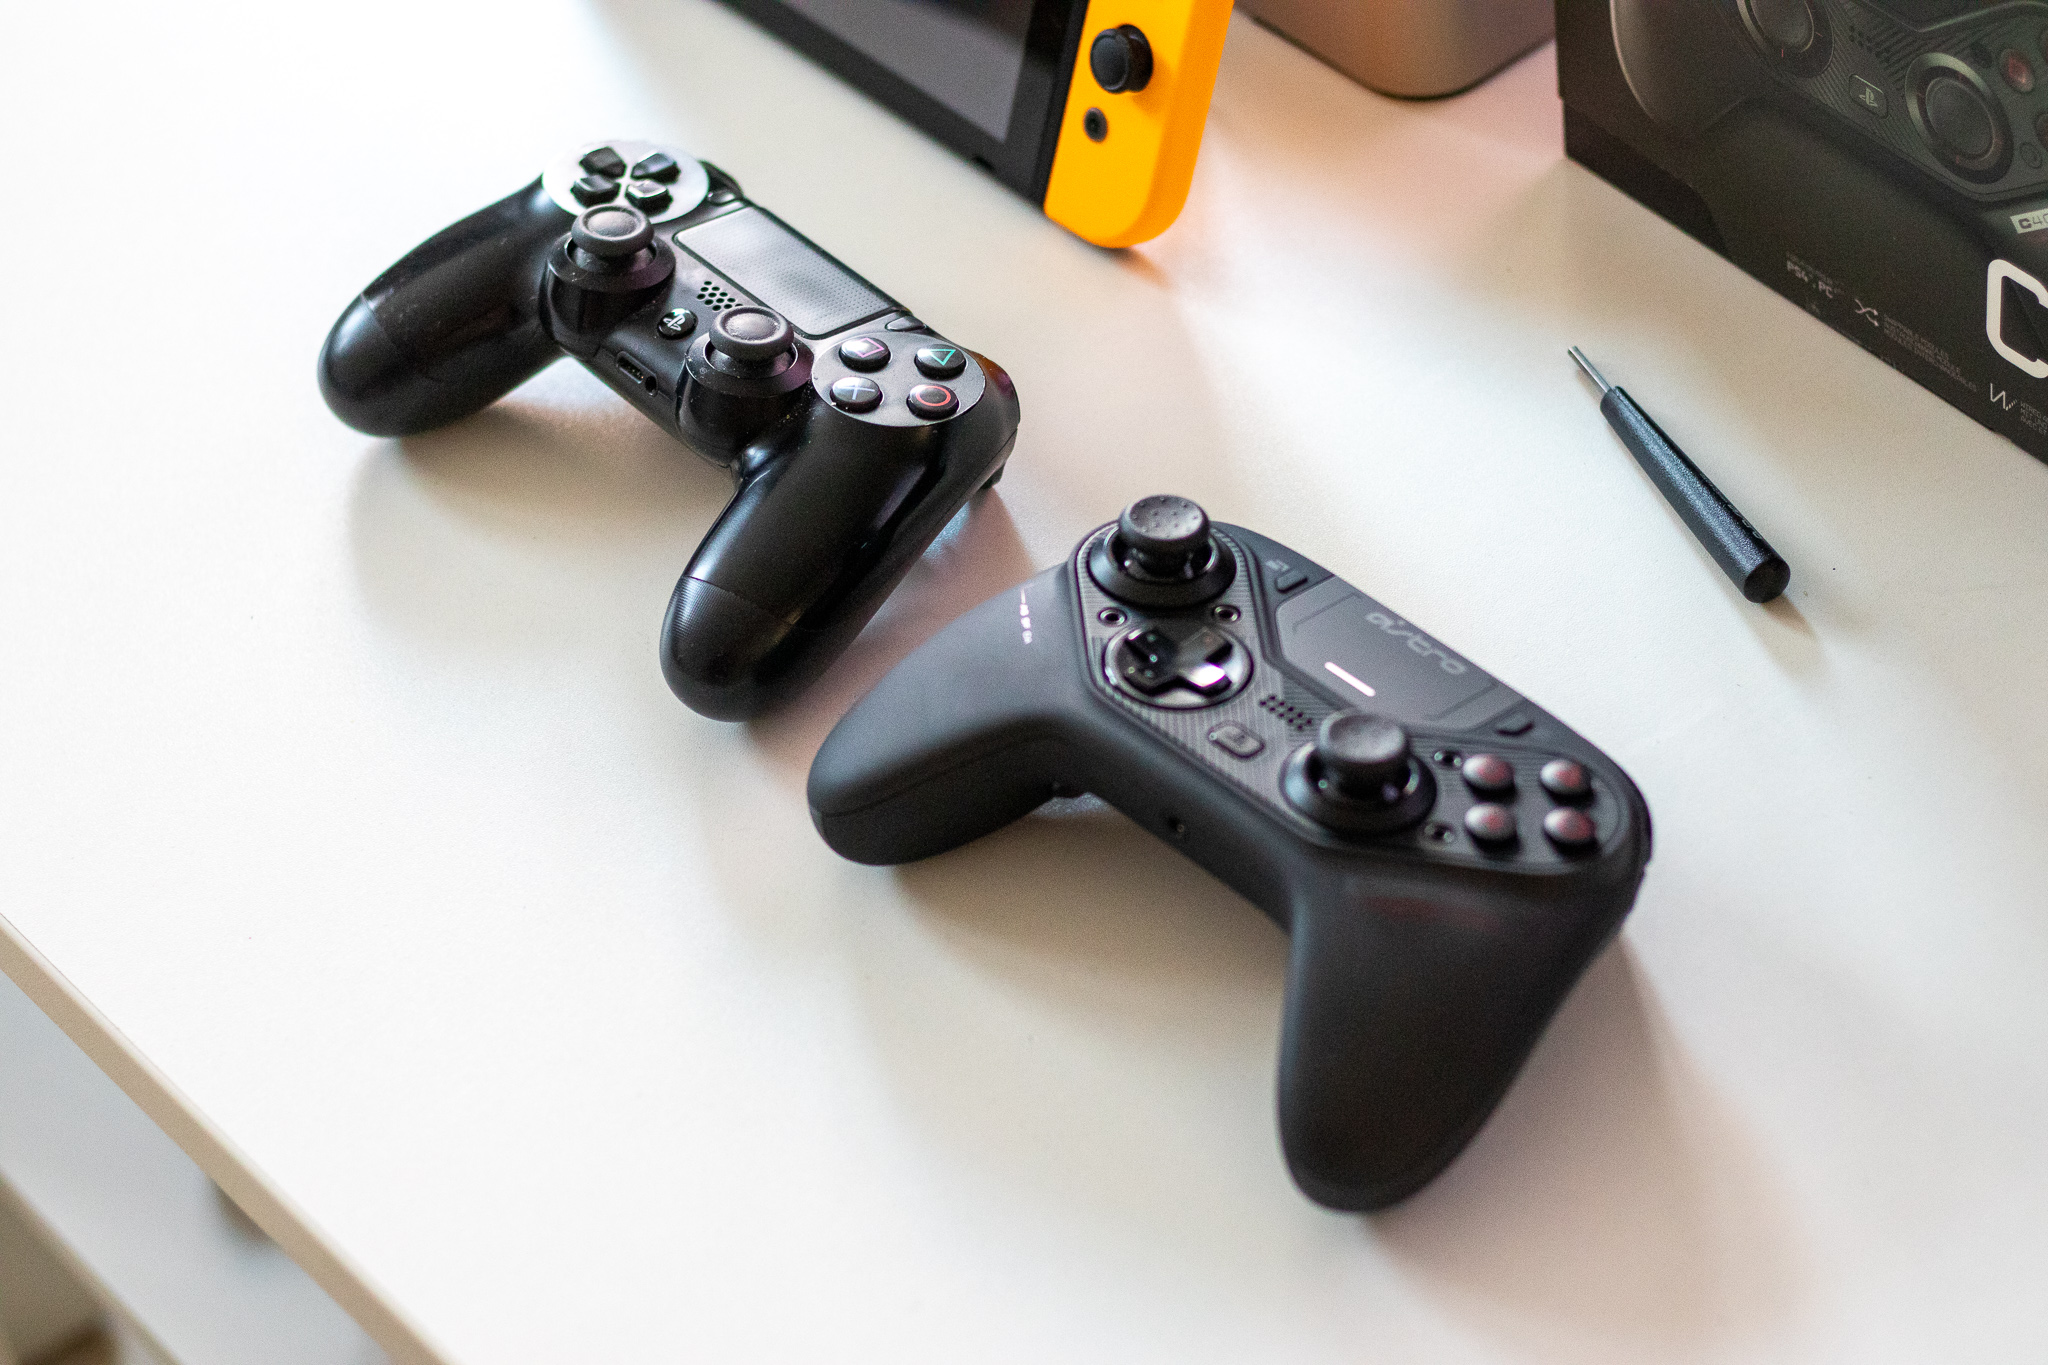 Pengaturan analog dari PlayStation atau Xbox? Kontroler Astro C40 TR menawarkan kedua pengaturan ini - tinjauan 10